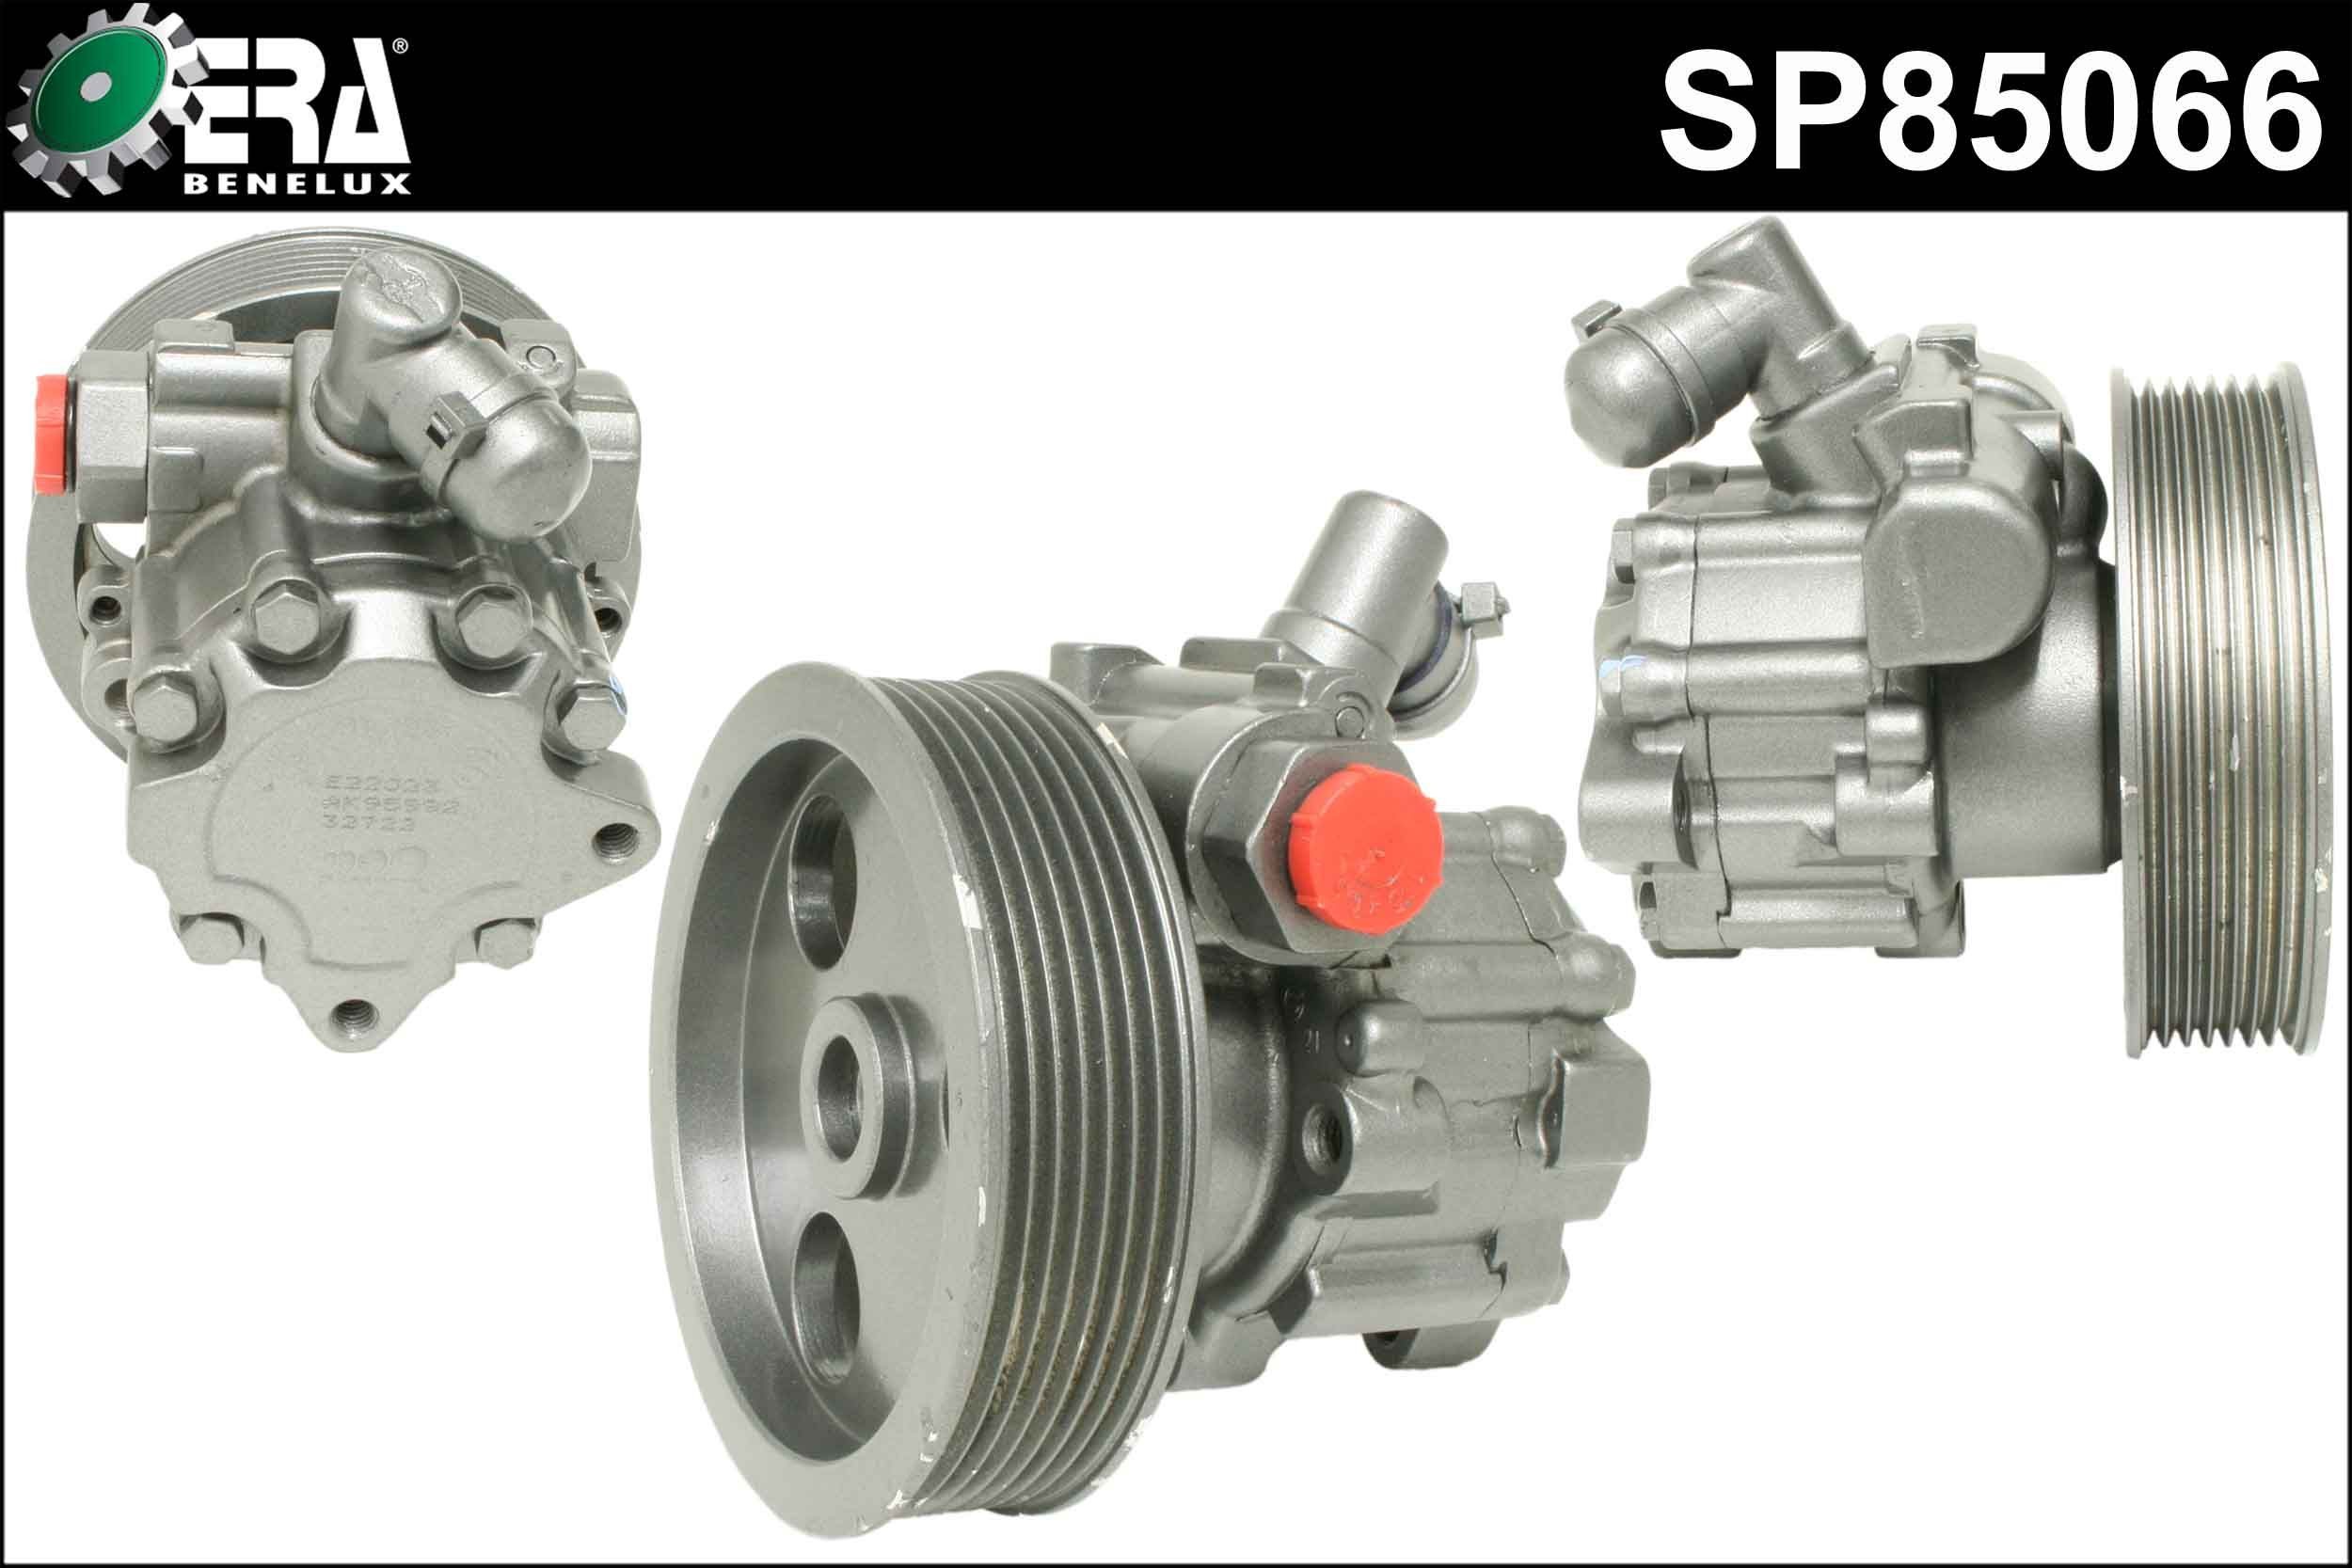 ERA Benelux SP85066 Power steering pump